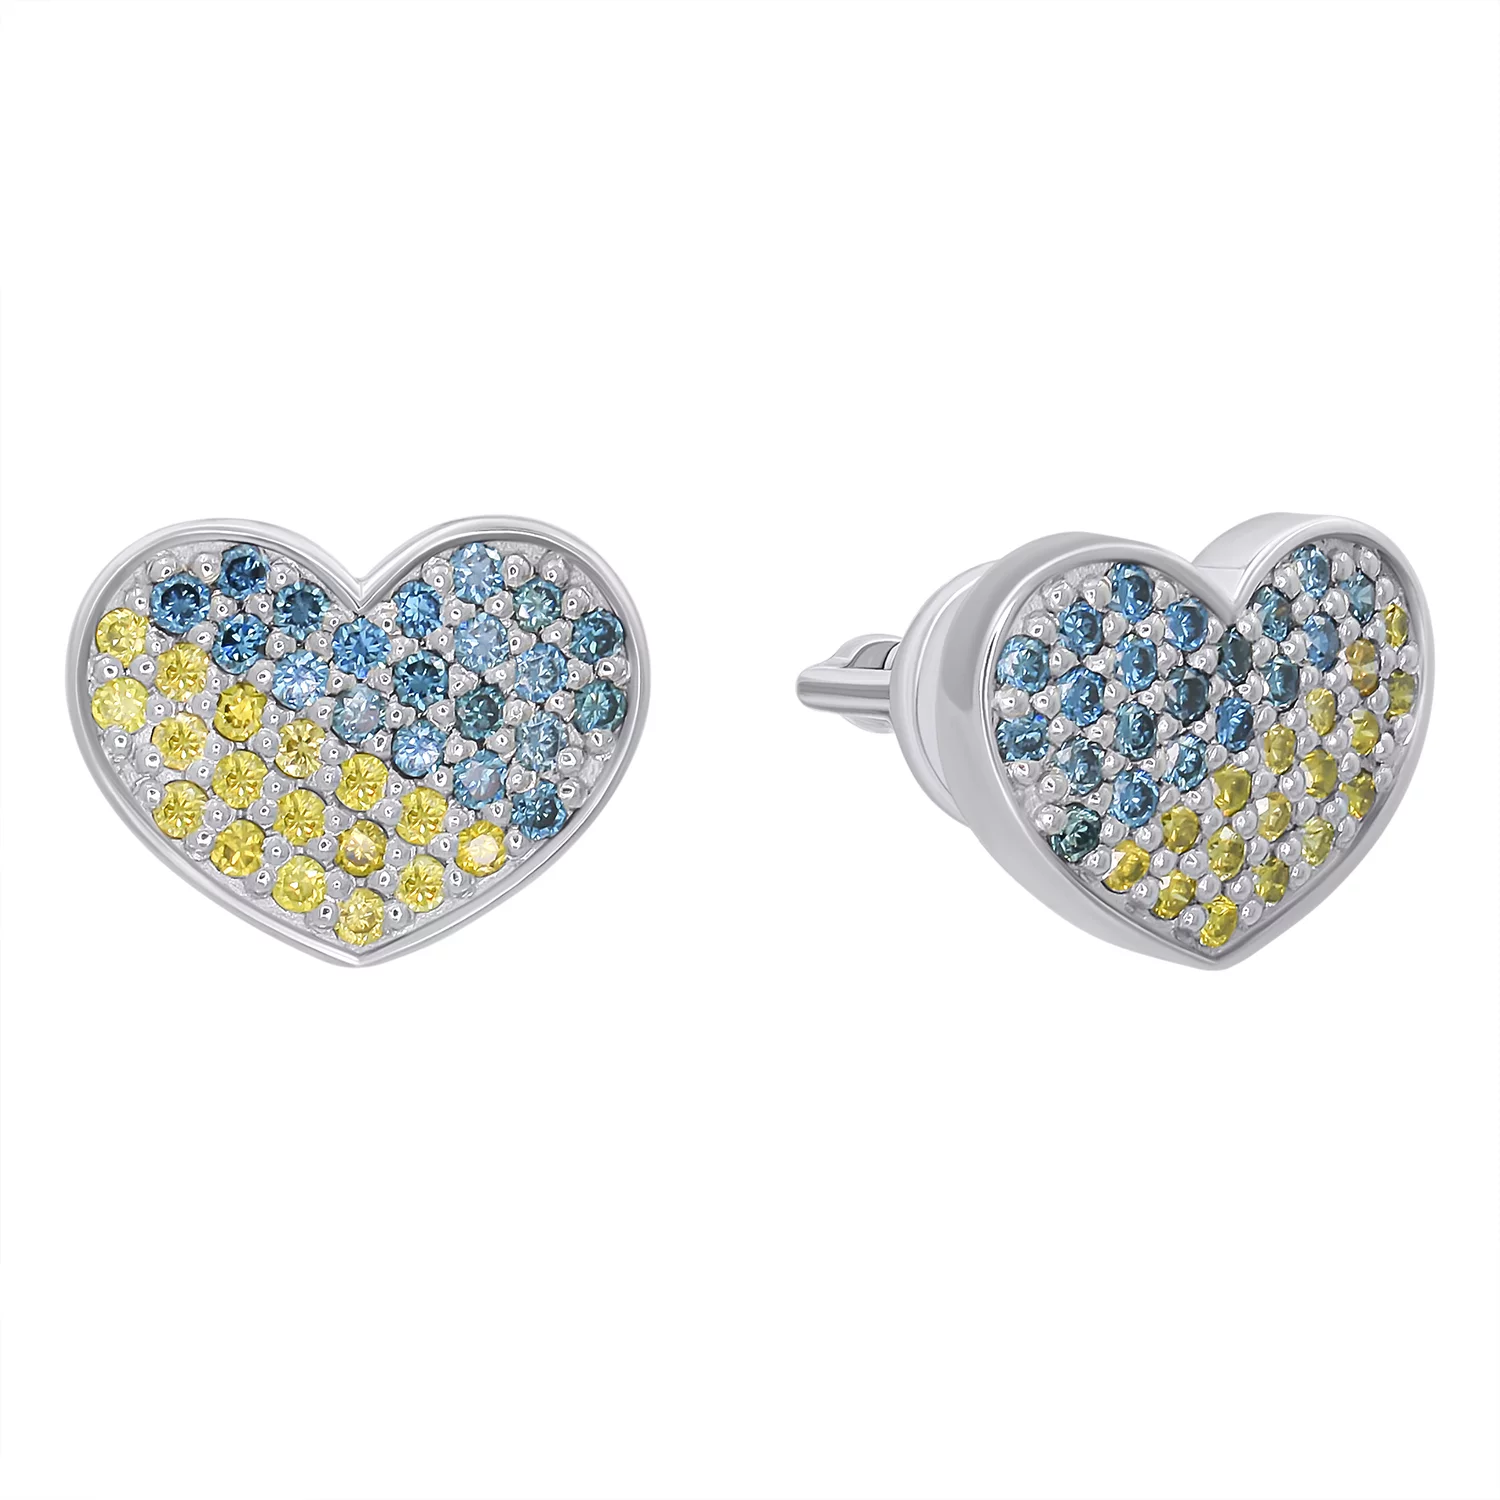 Сережки-гвоздики из белого золота с бриллиантами Сердце Украина. Артикул 2190150202/10: цена, отзывы, фото – купить в интернет-магазине AURUM